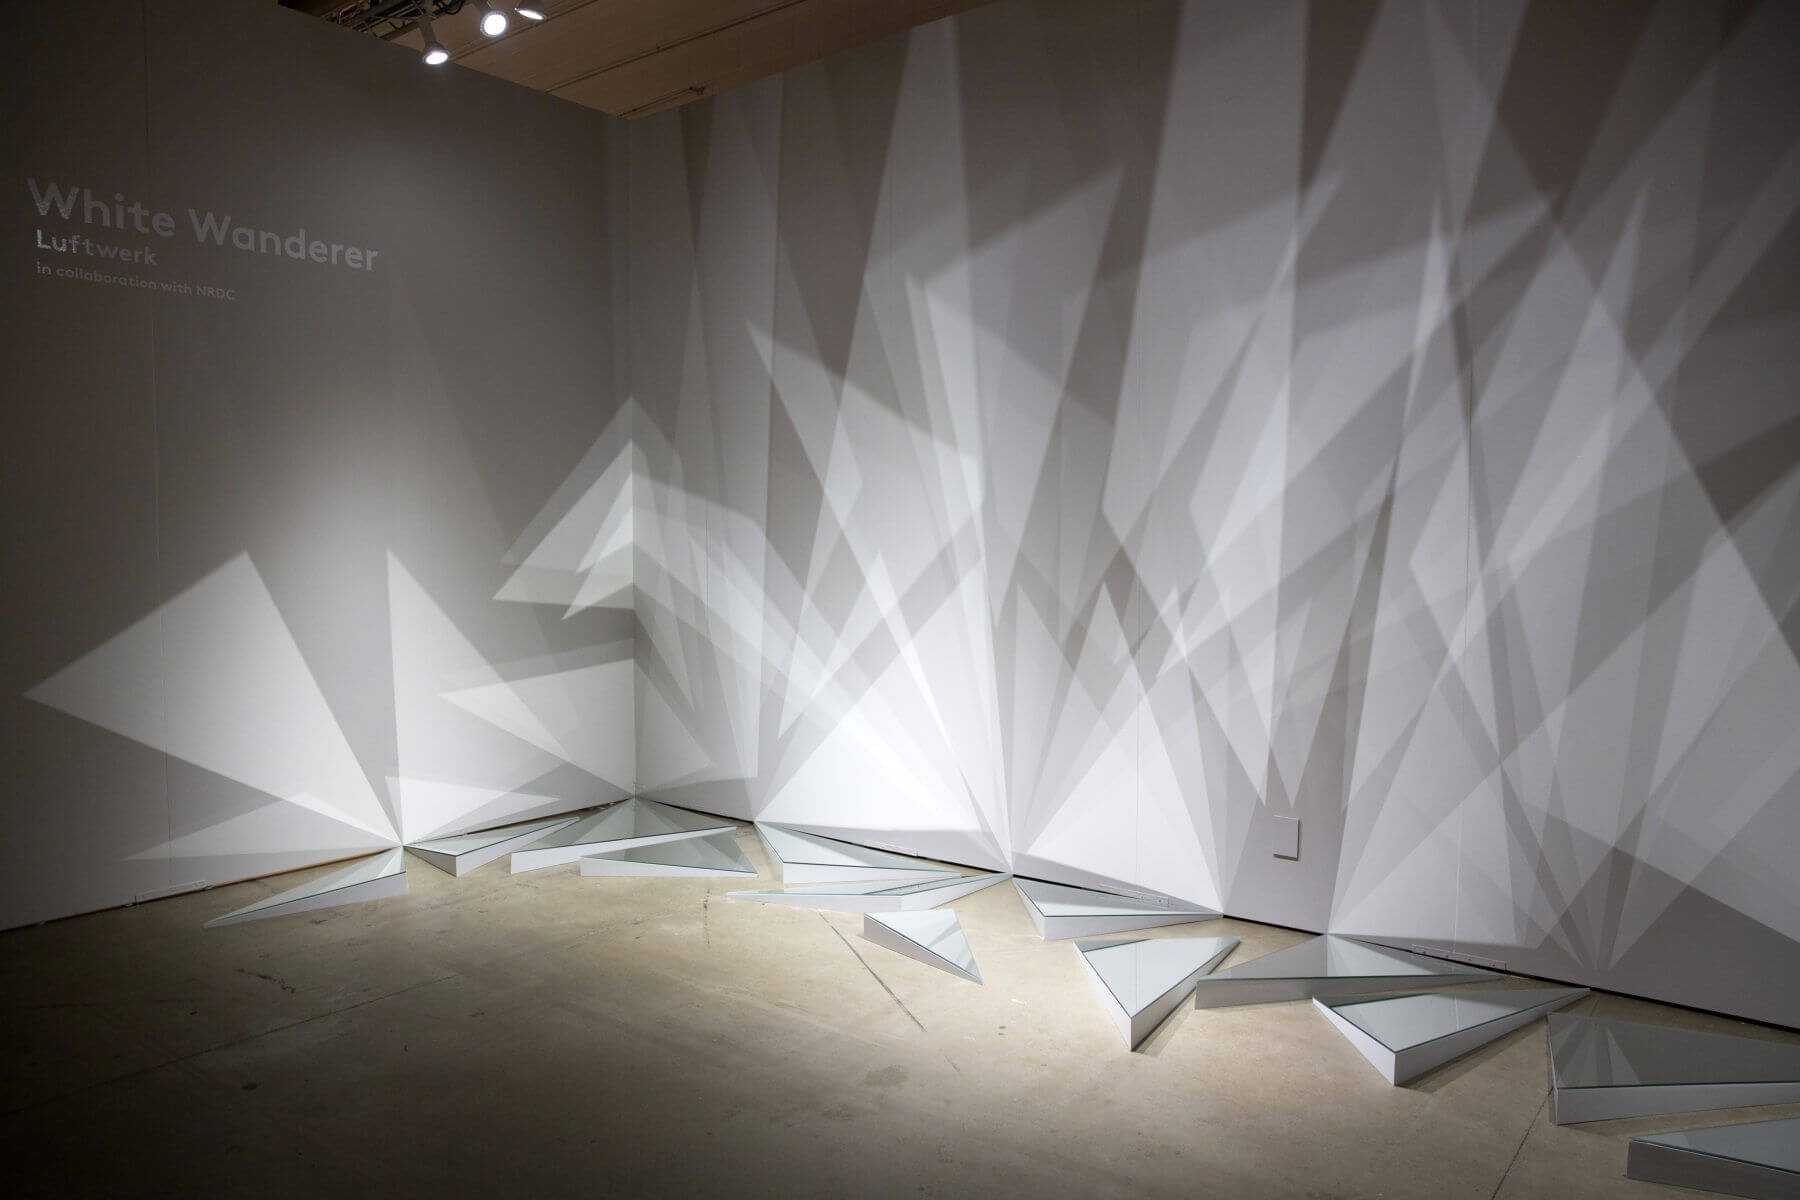 The White Wanderer installation by Luftwerk